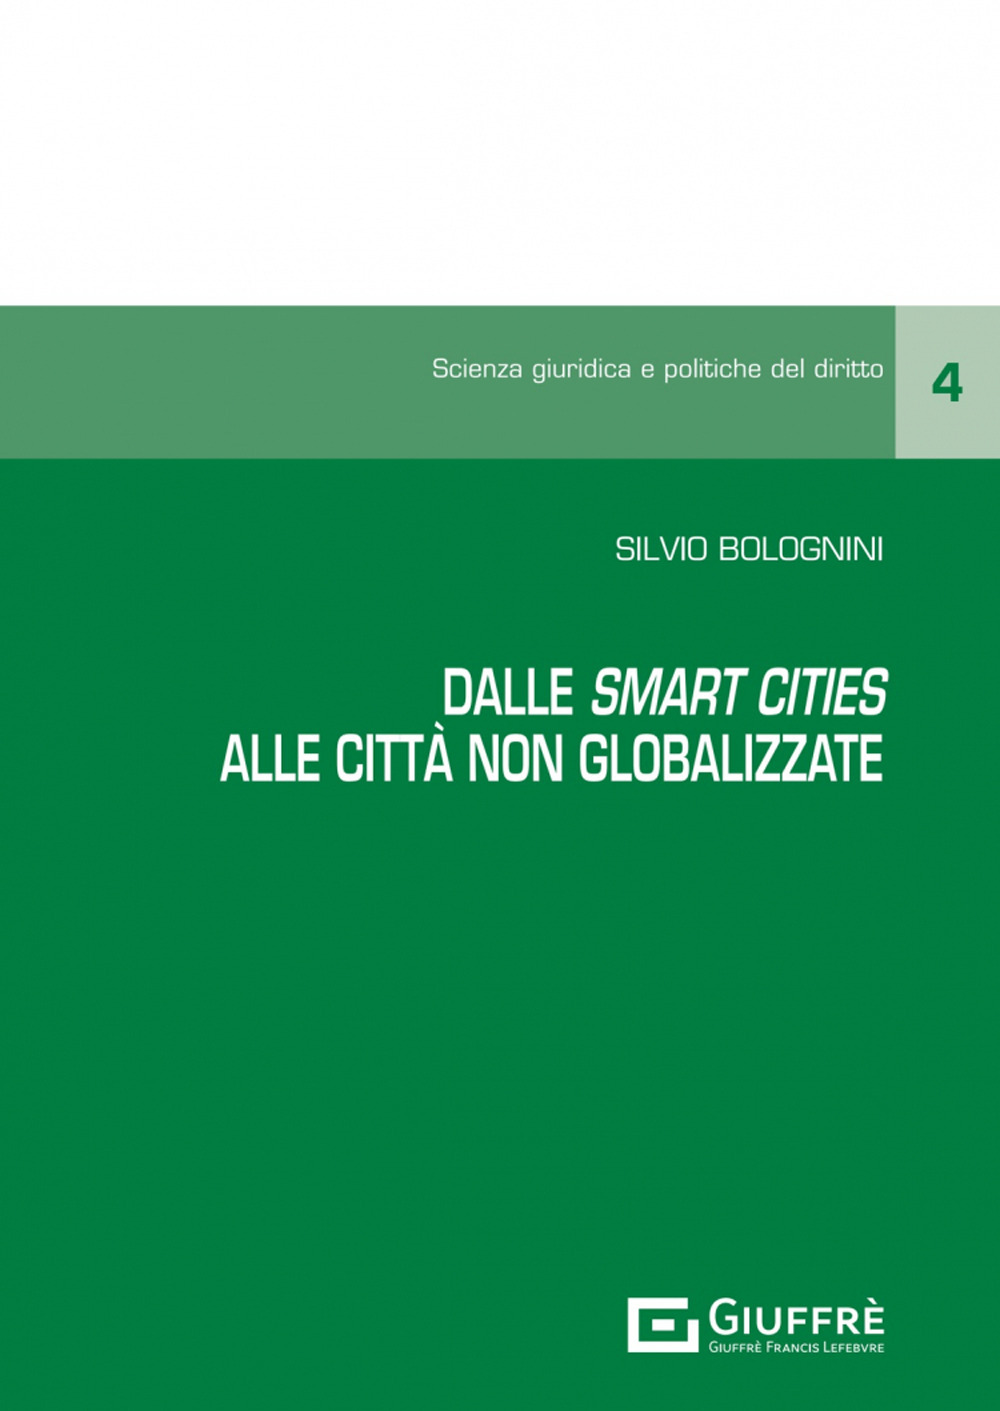 Dalle «smart cities» alle «città non globalizzate»